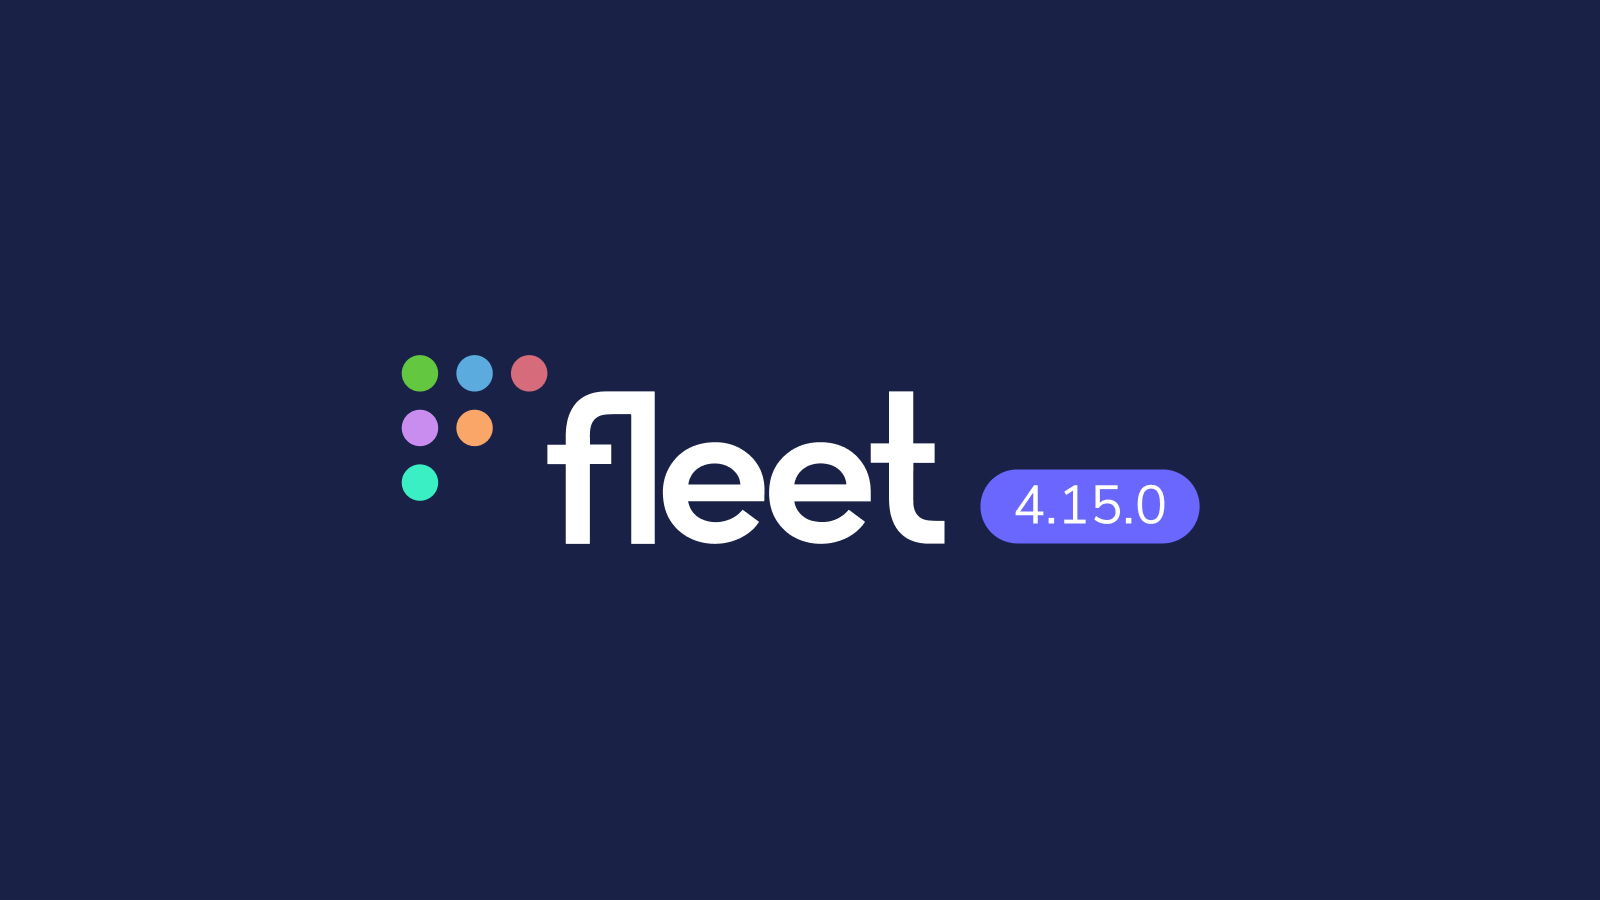 Fleet 4.15.0